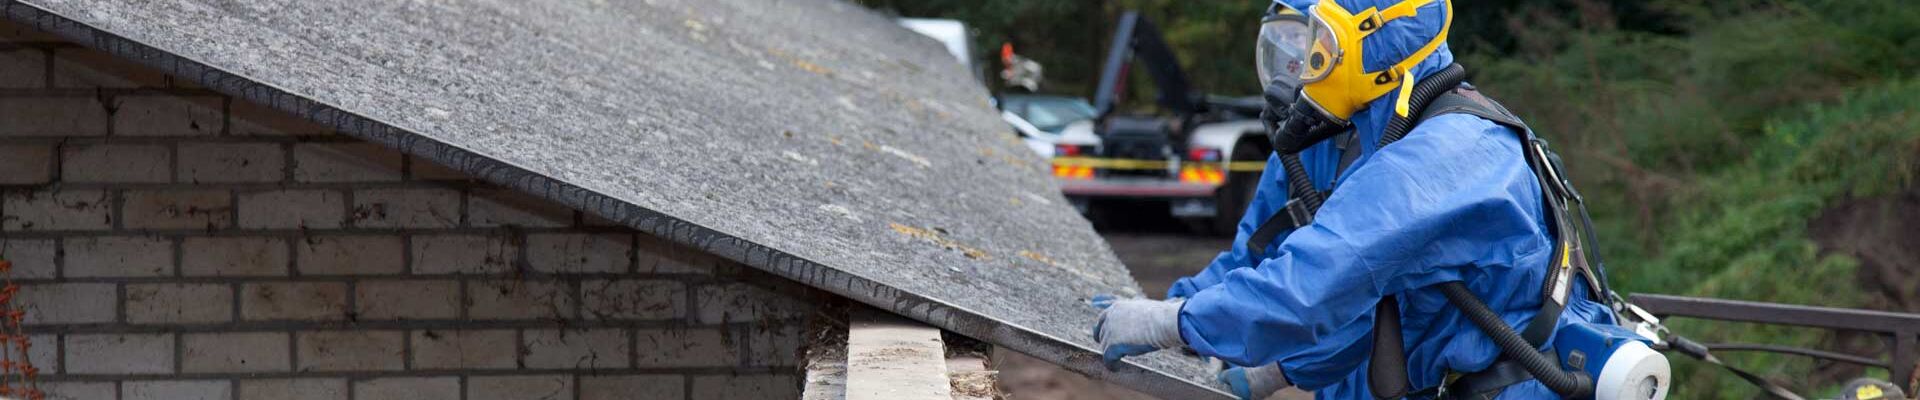 Das Bild für Asbest Sachkunde zeigt zwei Arbeiter in Schutzanzügen und Atemmasken, die ein Dach inspizieren.